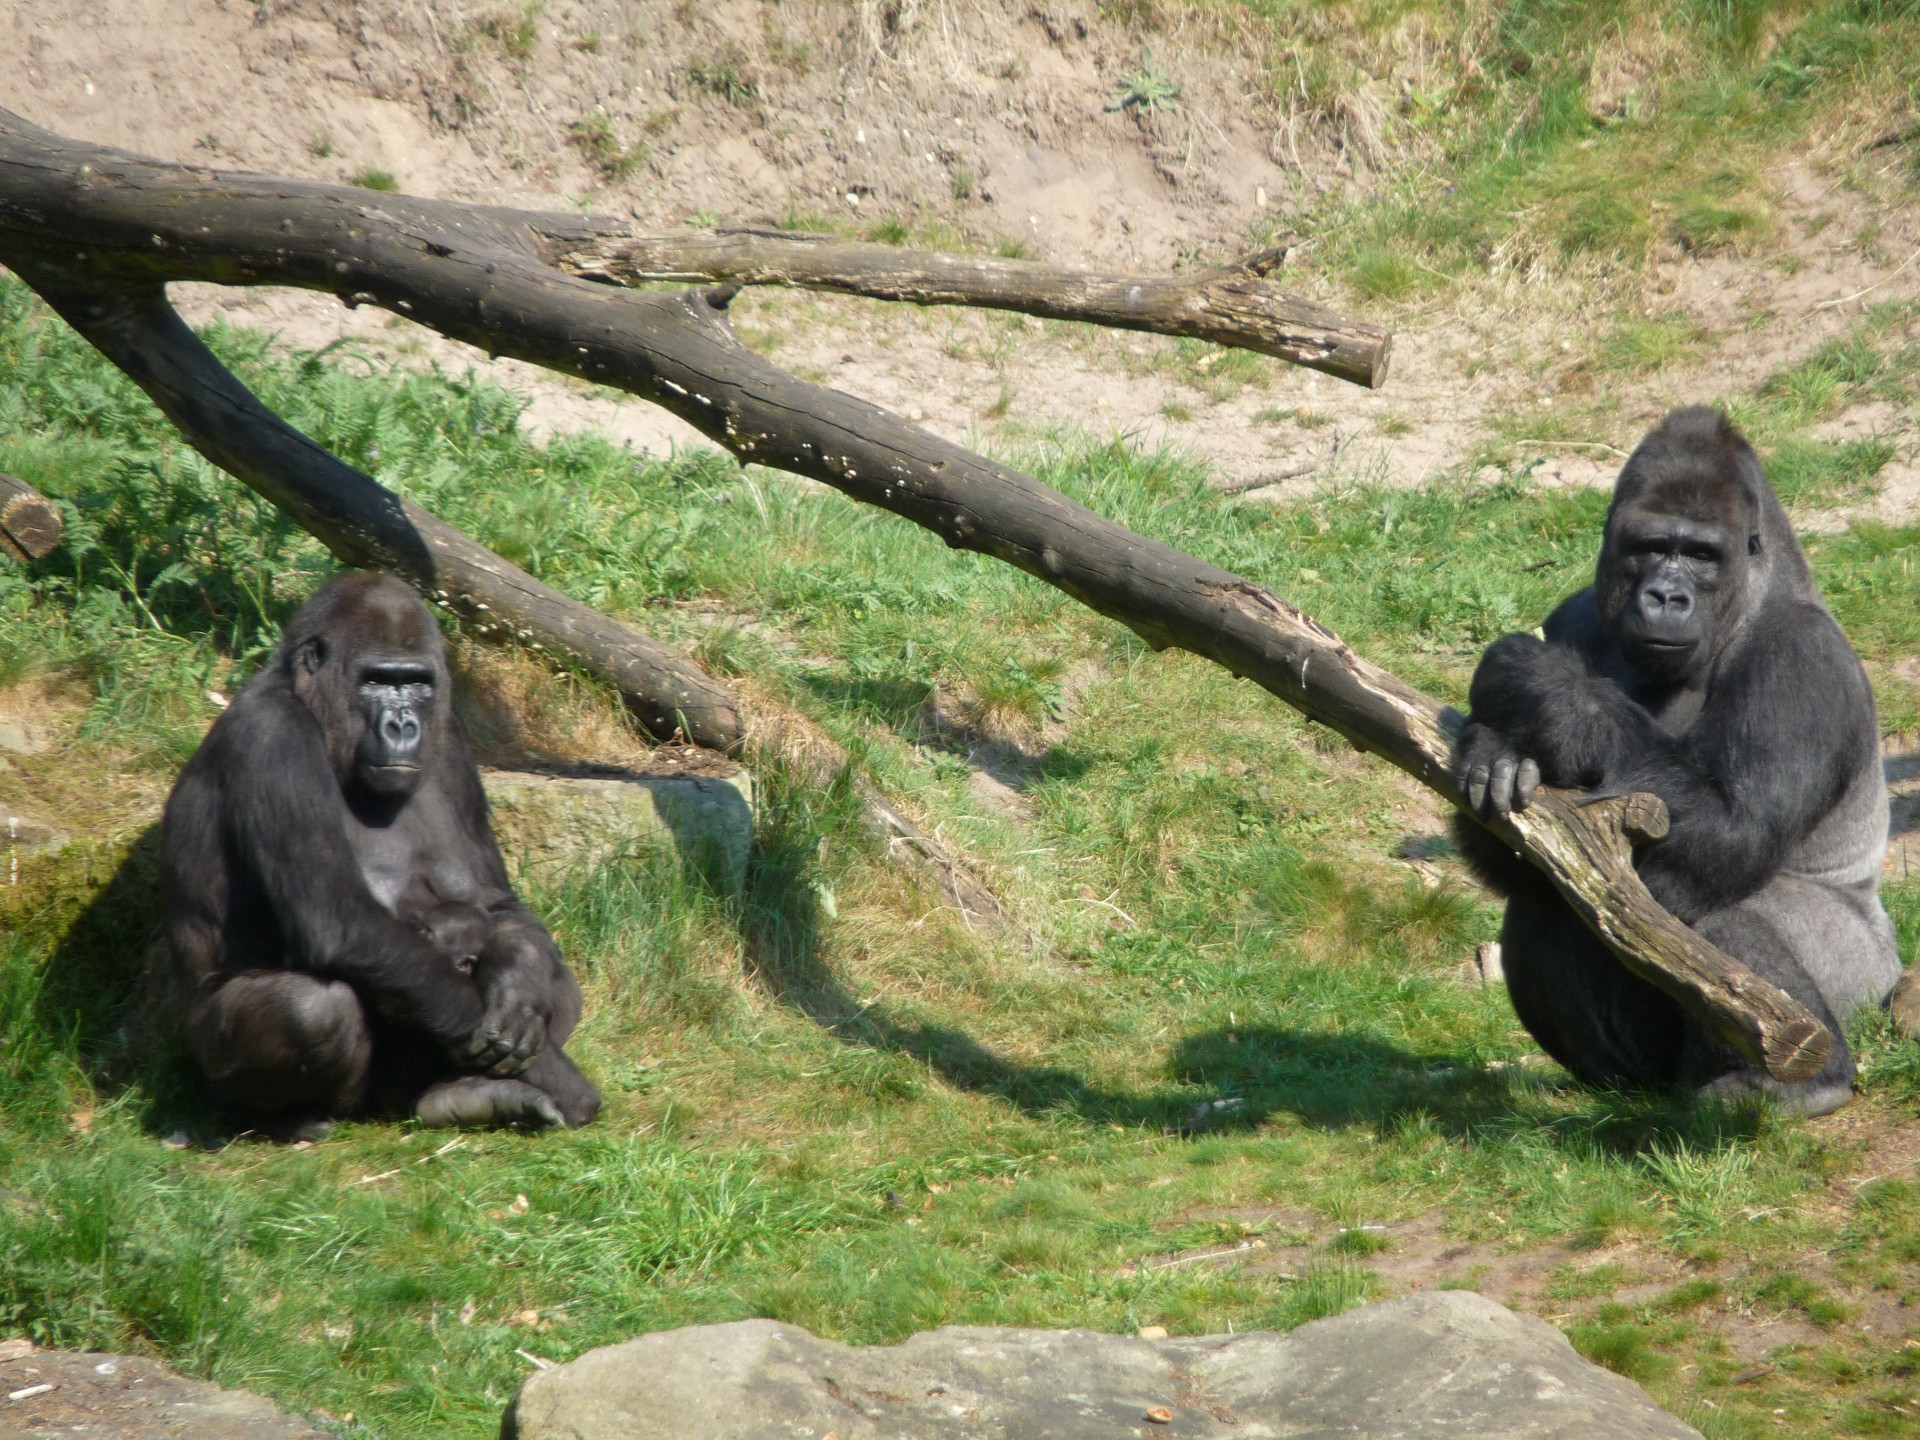 gorilla ape monkey free photo